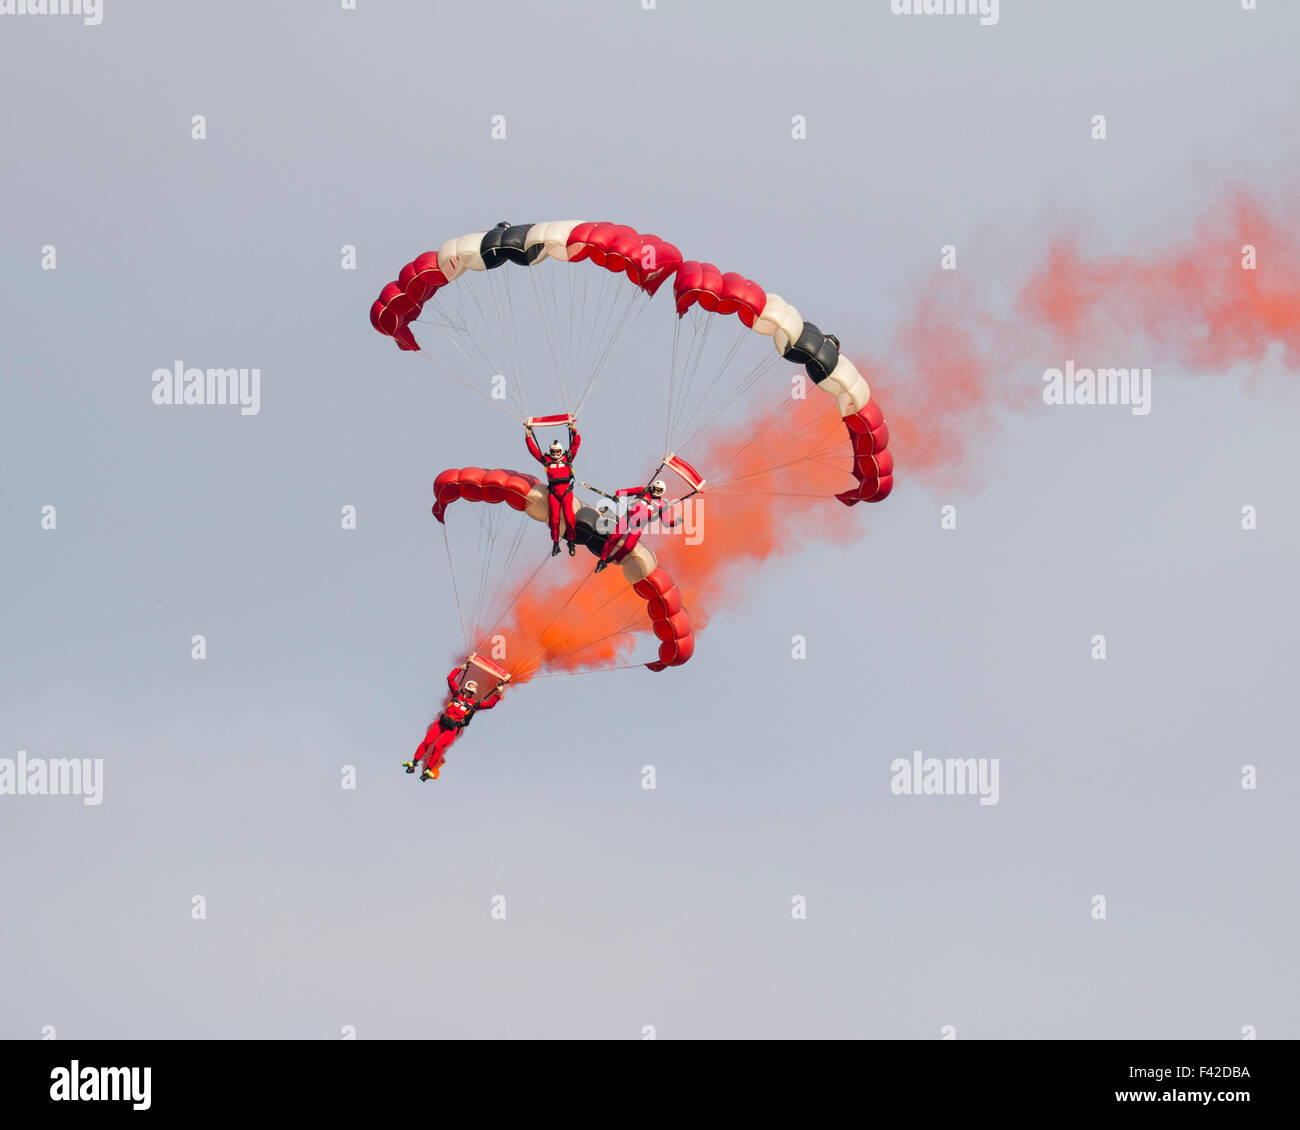 Fallschirm-Regiment Freefall Team "Red Devils" Anzeige im Oktober 2015 Shuttleworth Vertrauen Flugschau Stockfoto